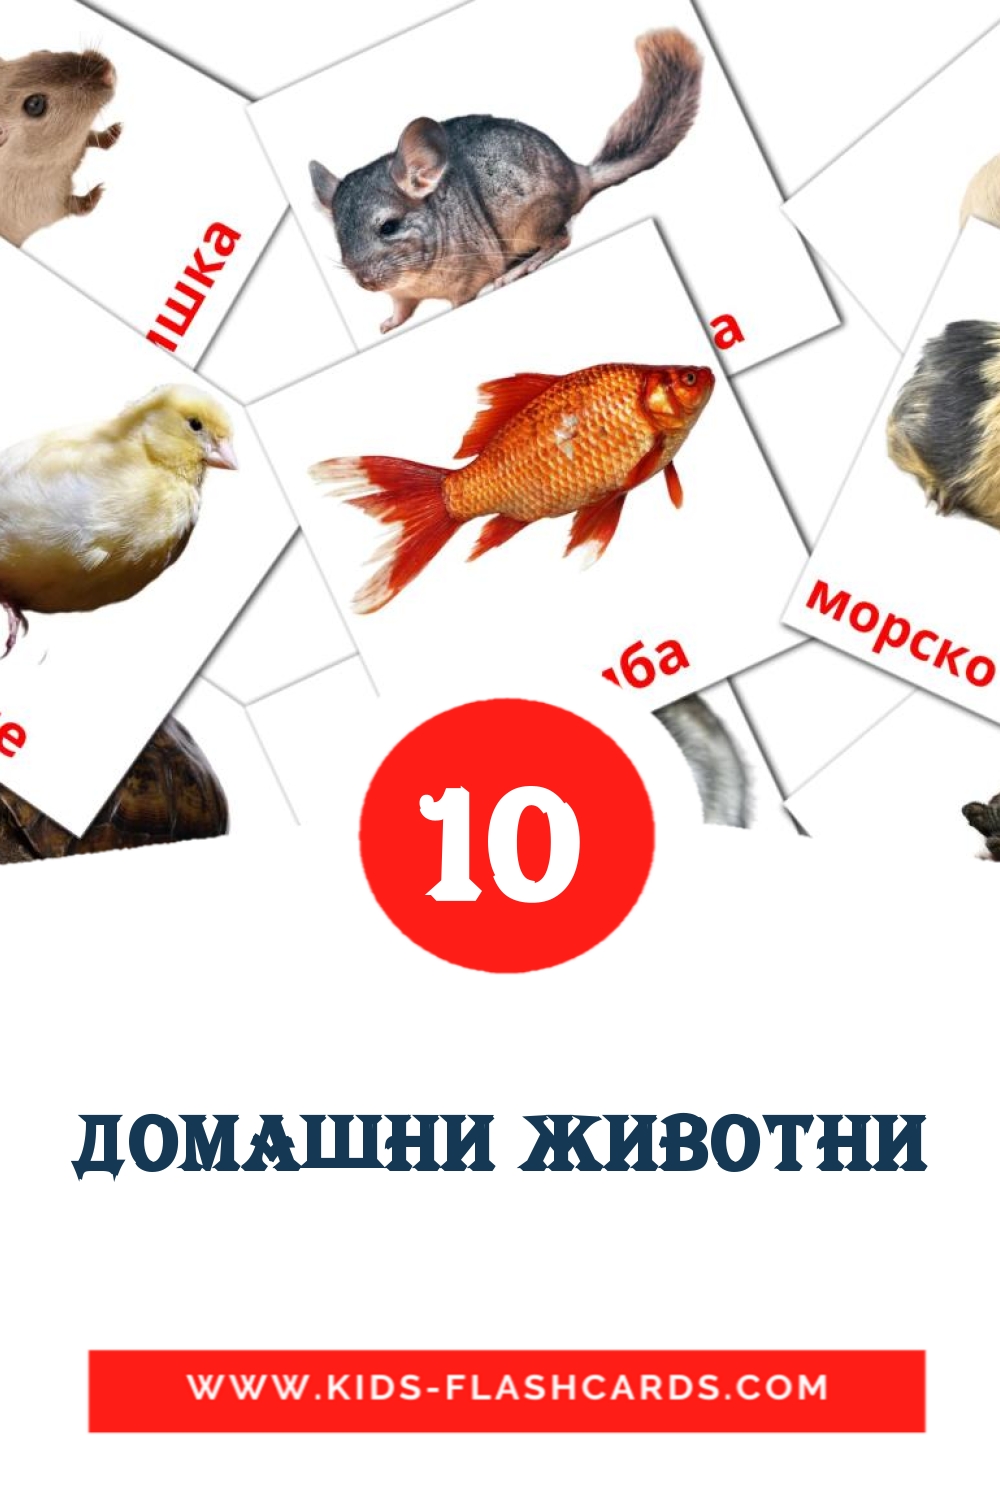 10 Домашни животни fotokaarten voor kleuters in het bashkir